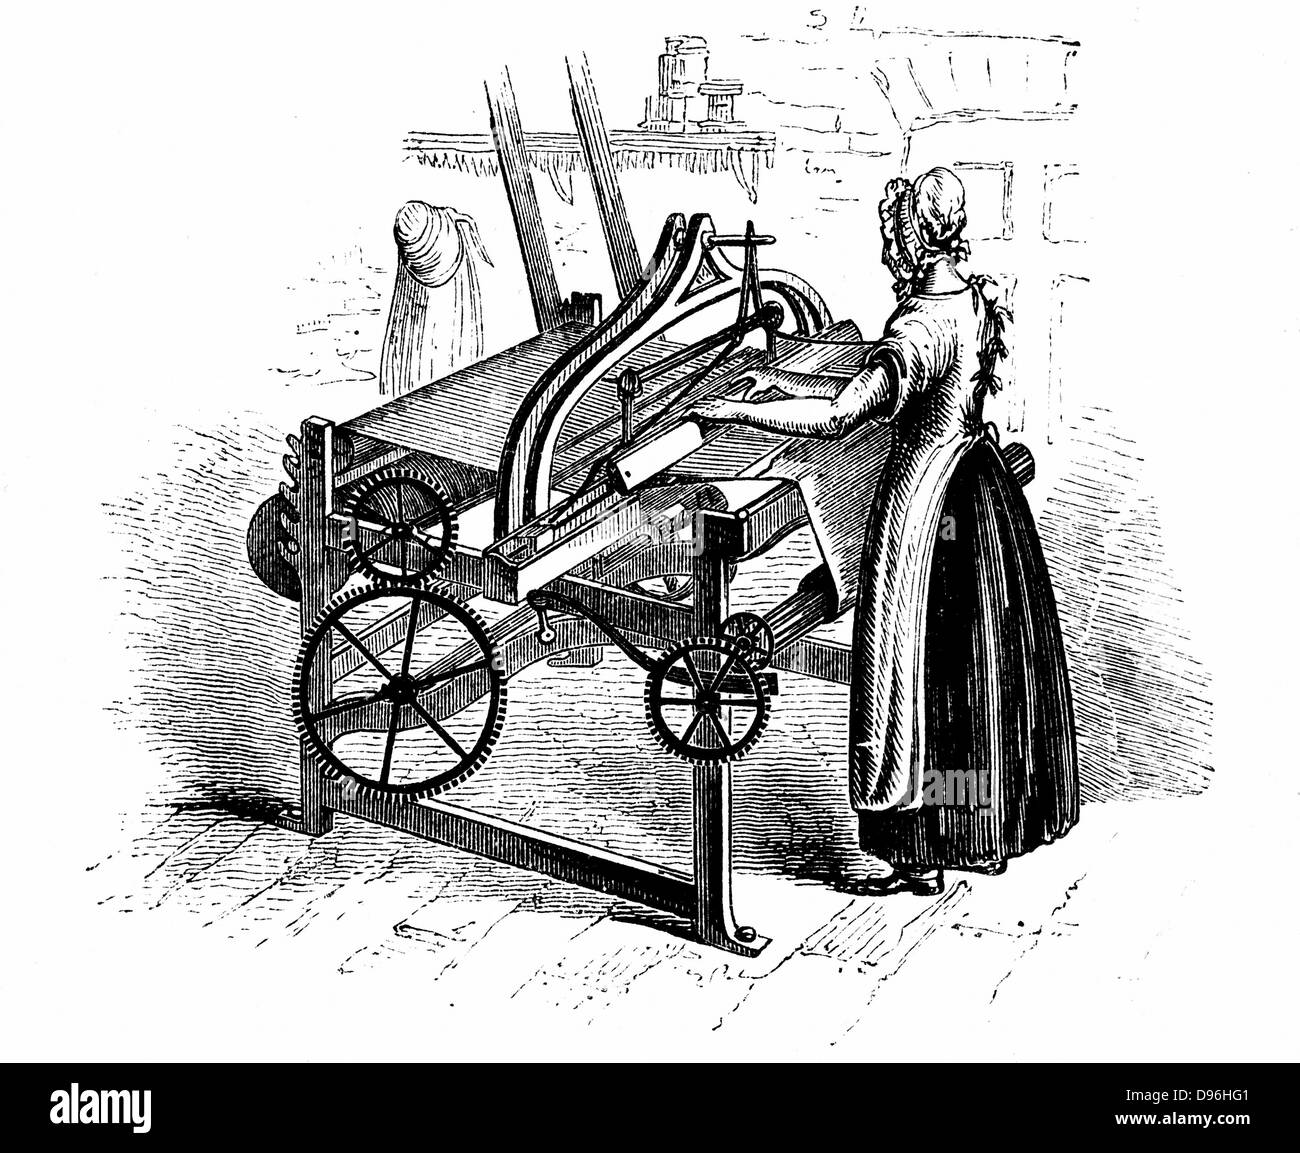 Power loom für das Weben von Baumwolle. Das abgebildete Modell ist, dass von Roberts erfunden (c 1815-20). Belting Anschließen der Antriebswelle in der Mitte der Abbildung dargestellt. Weibliche wirksam. Holzstich c 1840. Stockfoto